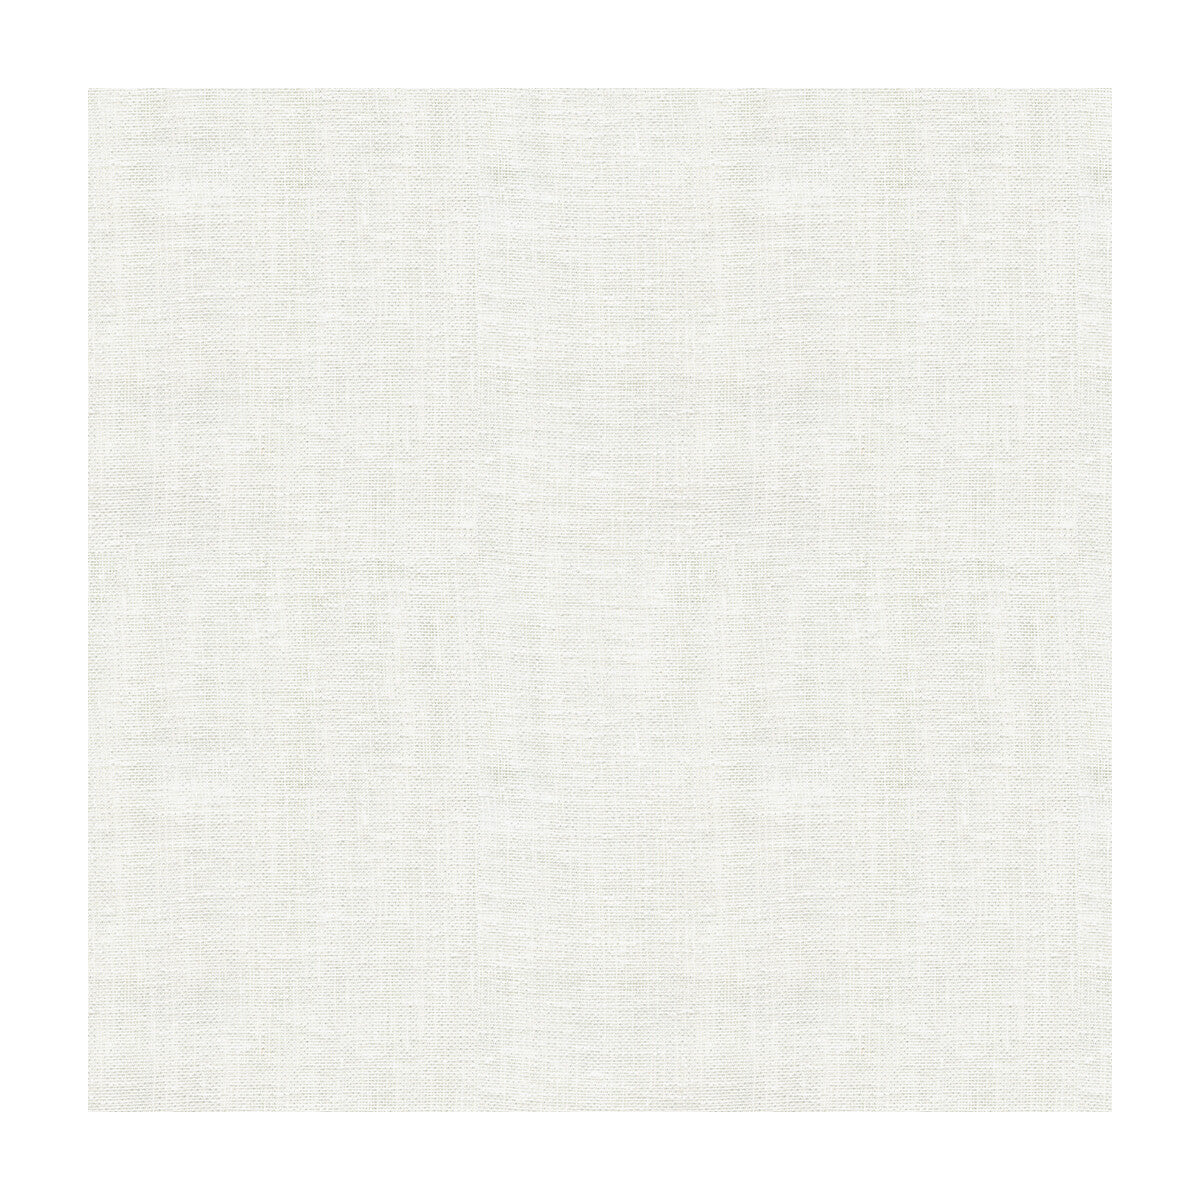 Kravet Basics fabric in 4122-101 color - pattern 4122.101.0 - by Kravet Basics